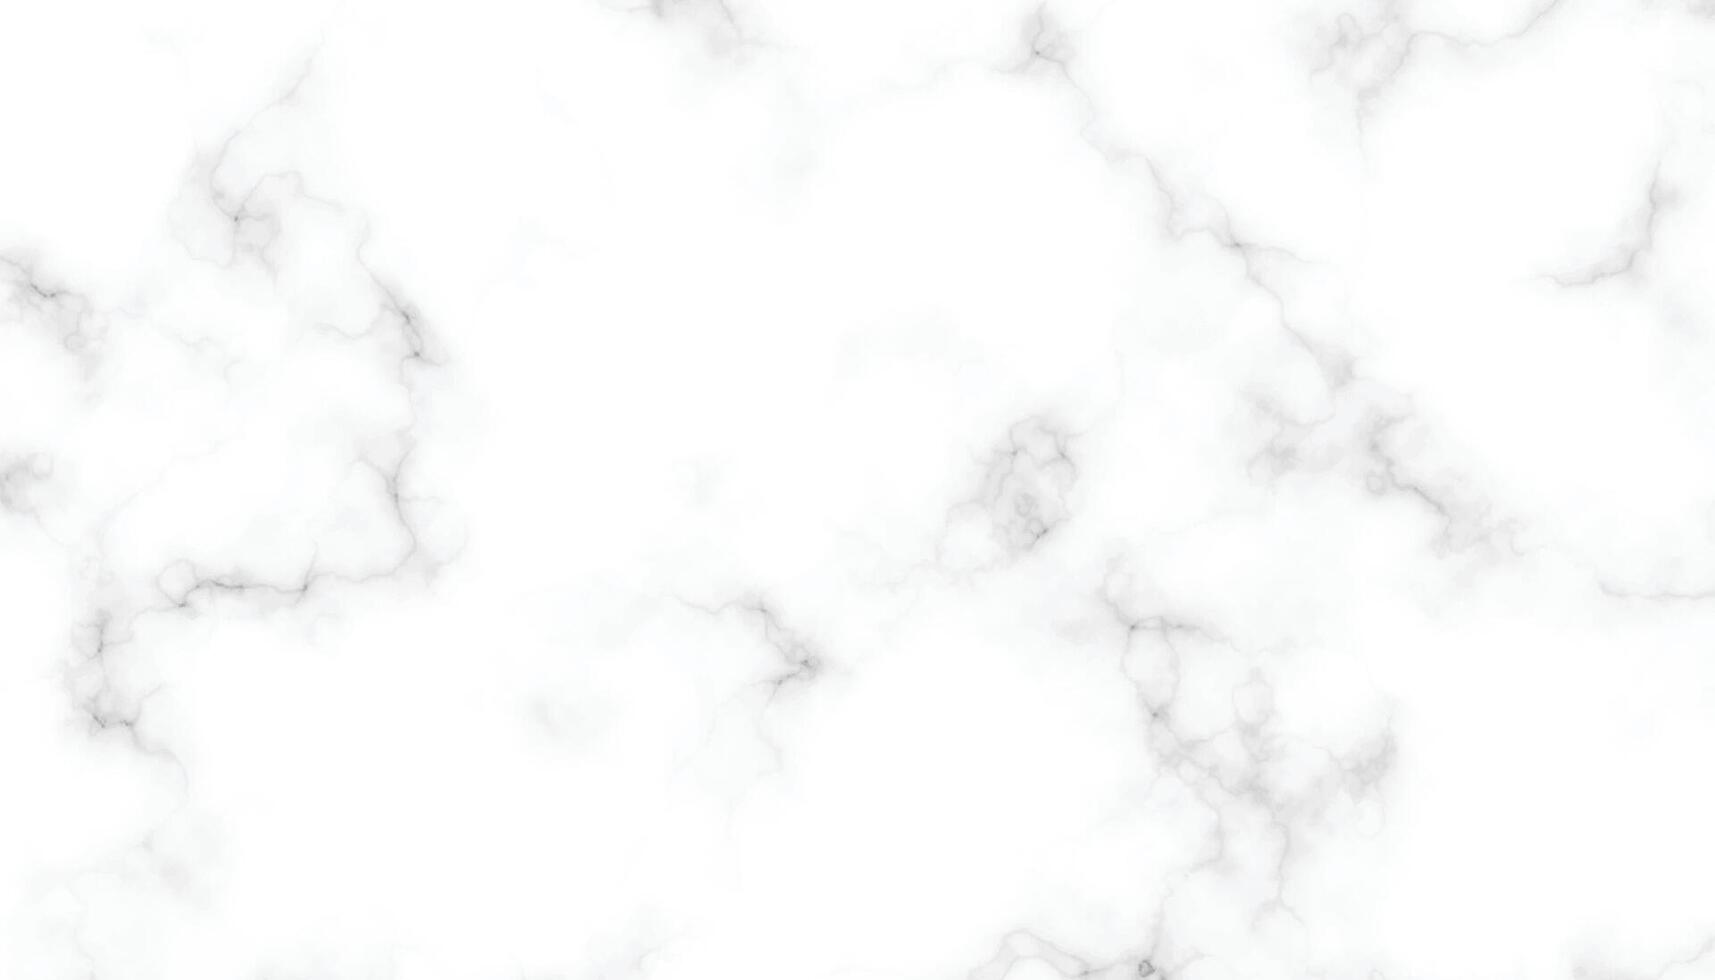 wit marmeren structuur en achtergrond. zwart en wit marmeren steen, muur tegels textuur. wit carrara marmeren steen textuur. naadloos patroon van tegel steen met helder en luxe vector